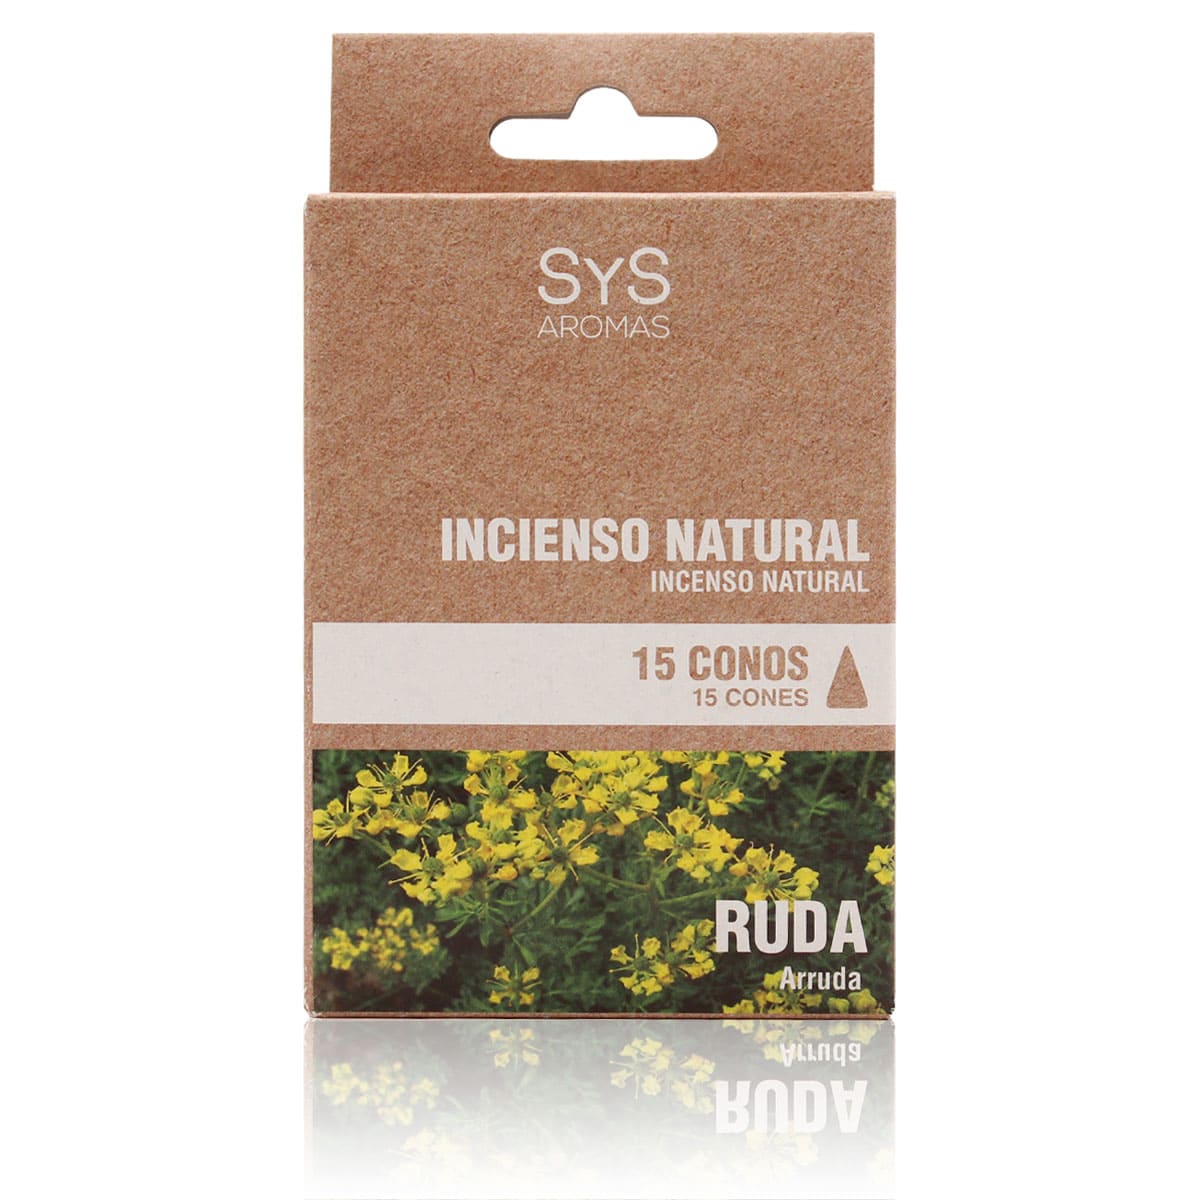 Buy Natural Rue Inciense 15 Cones SYS Aromas